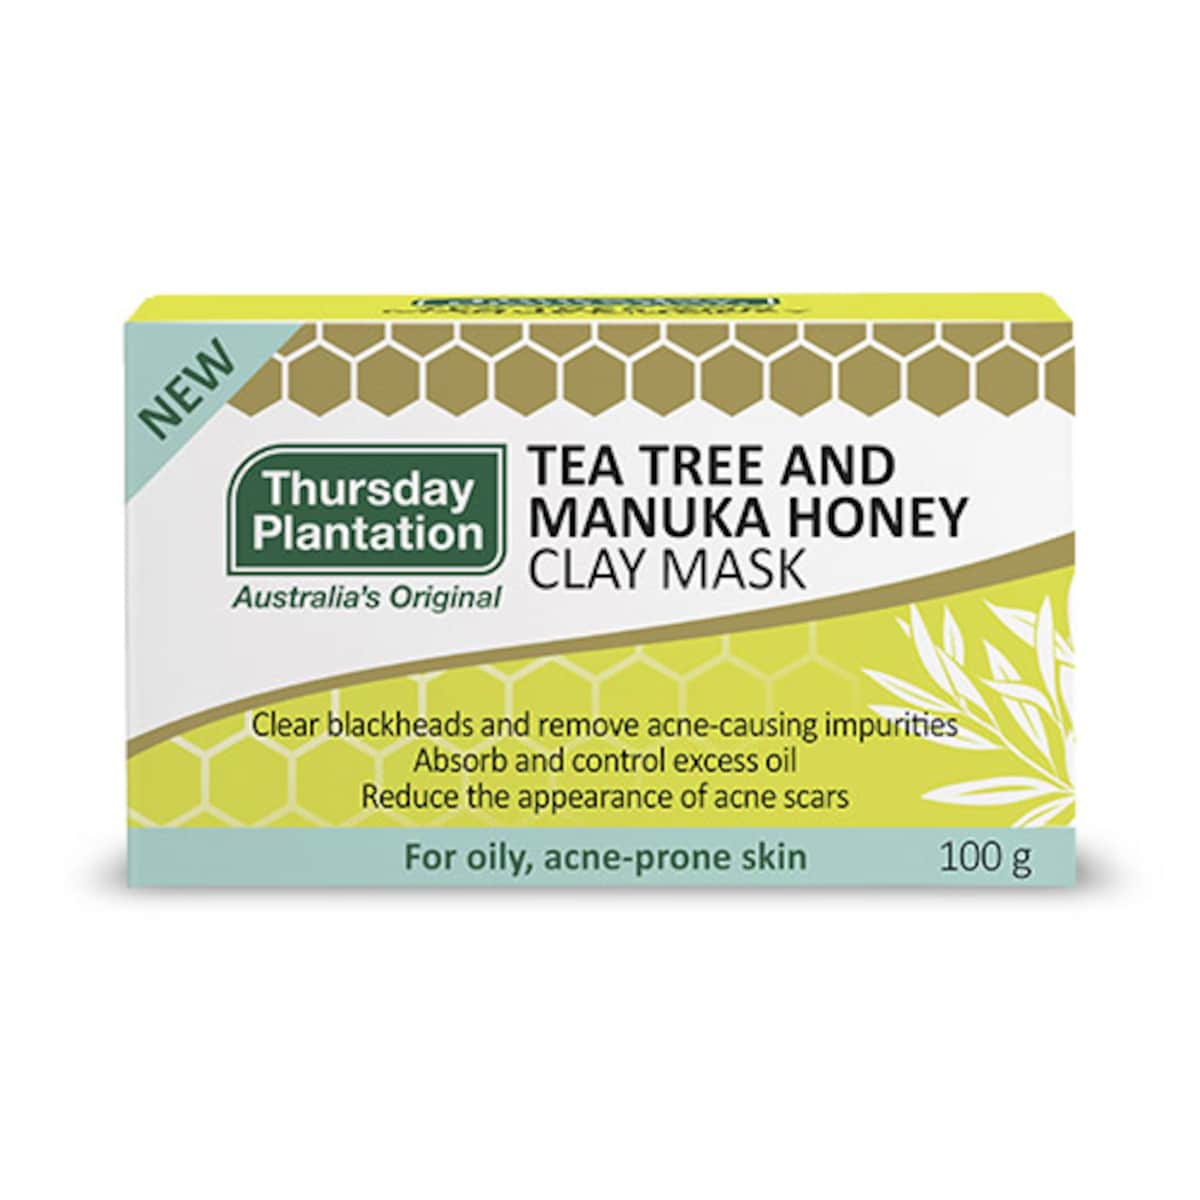 Thursday Plantation Tea Tree Manuka Honey Clay Mask 100g